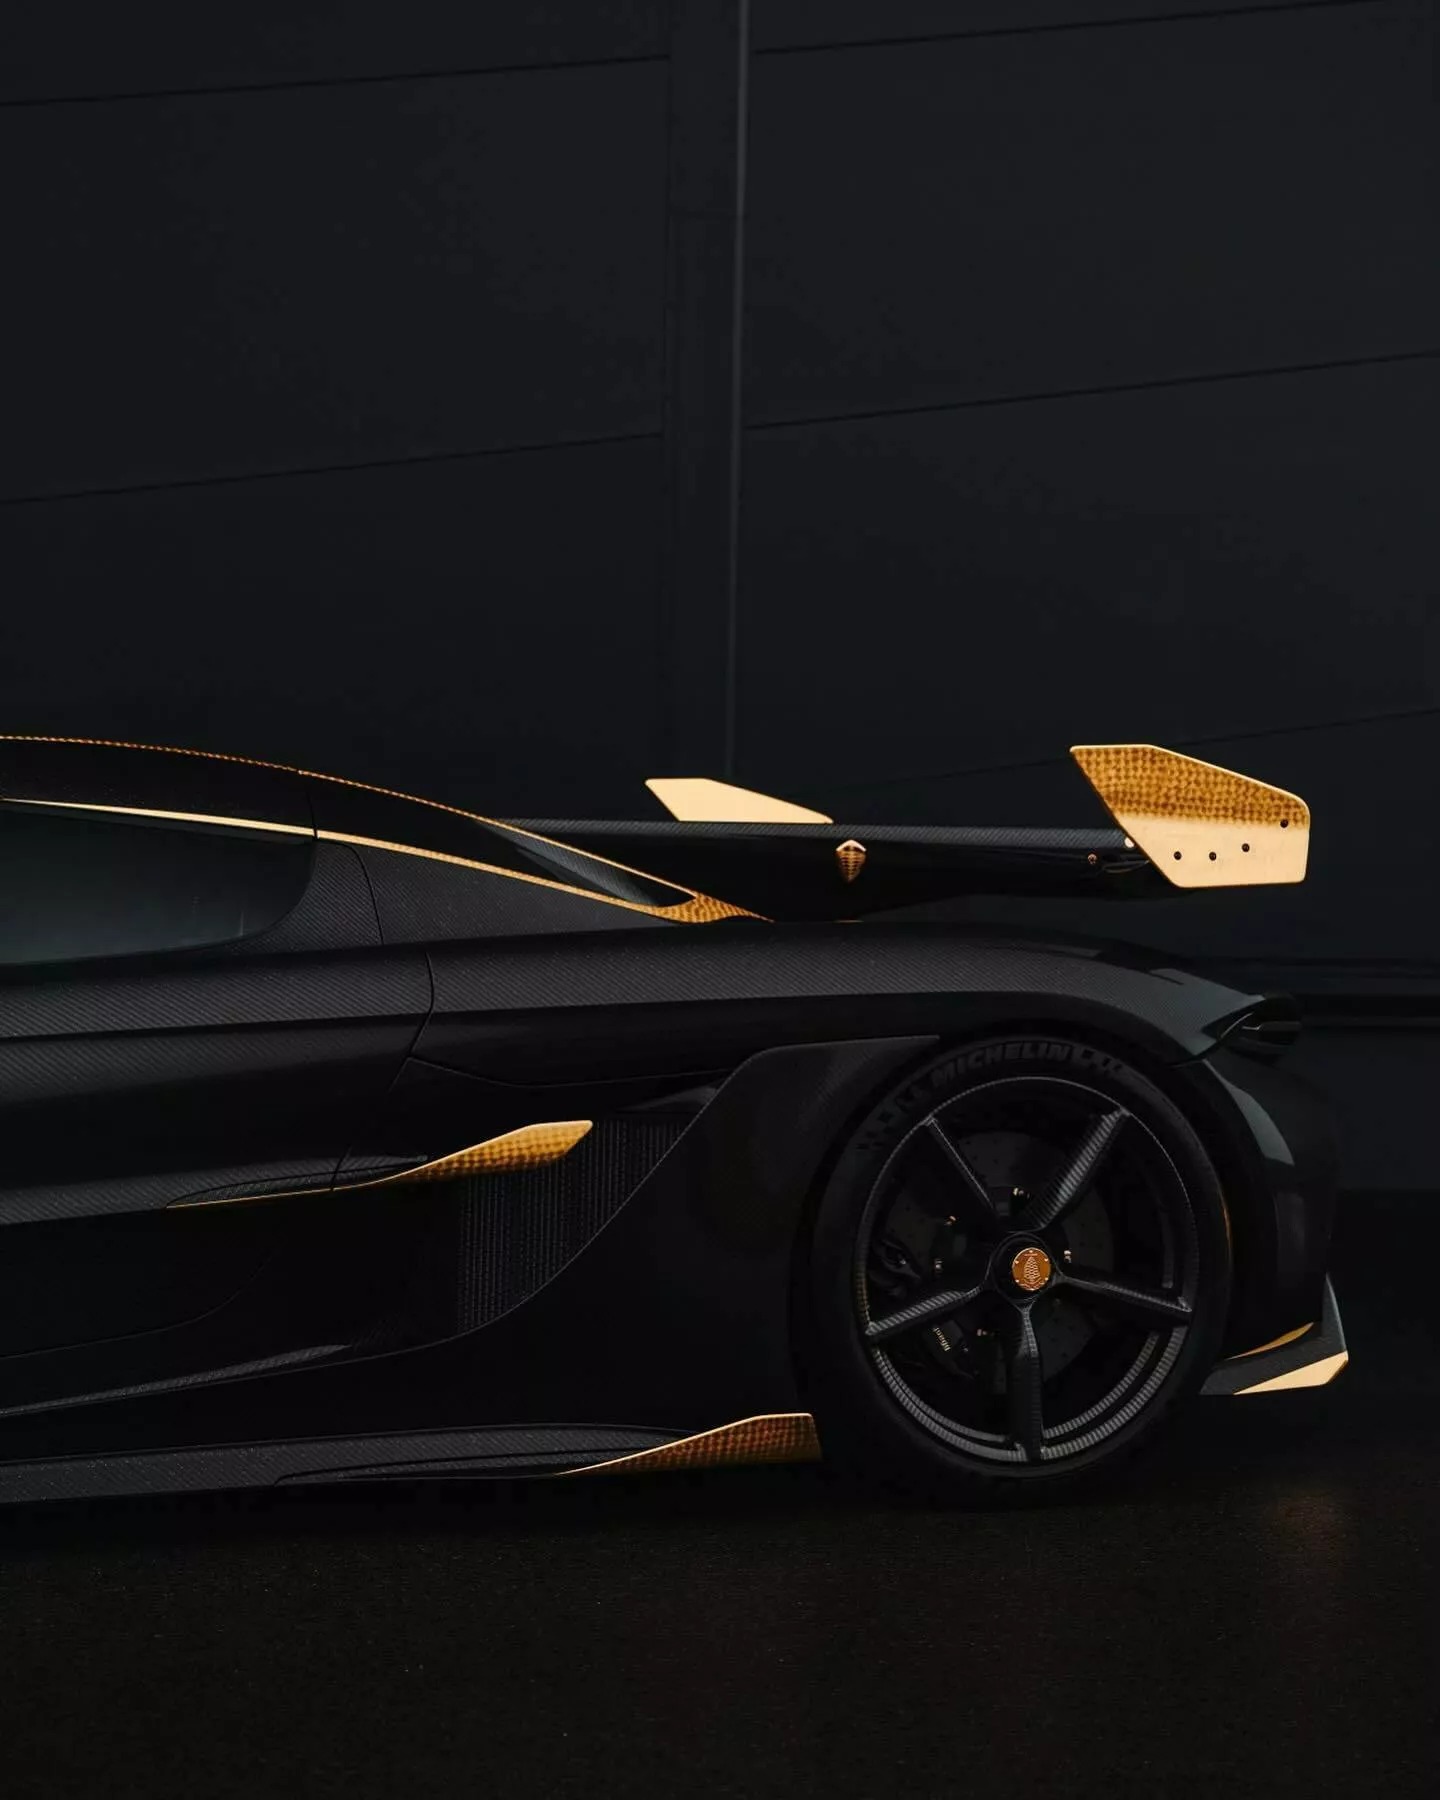 Đại gia bất động sản chơi siêu xe Koenigsegg khác người: Rắc bột vàng lên khắp vỏ carbon, mạ vàng 24k nhiều chi tiết ngoại thất- Ảnh 6.